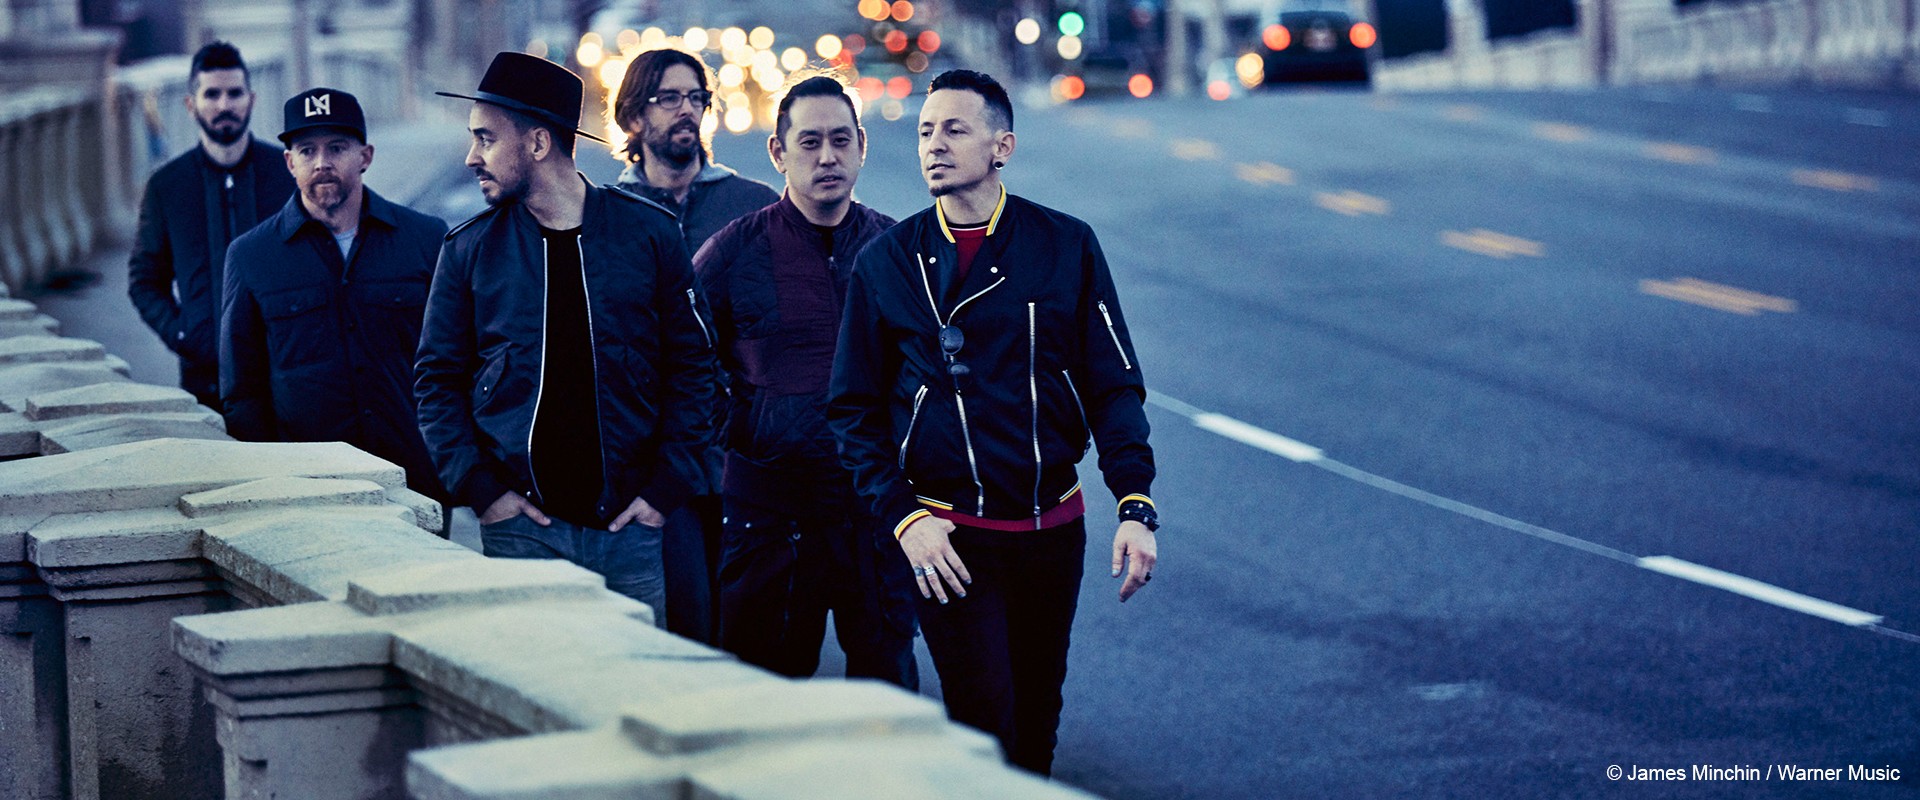 12-fach Platin für "Hybrid Theory" von Linkin Park